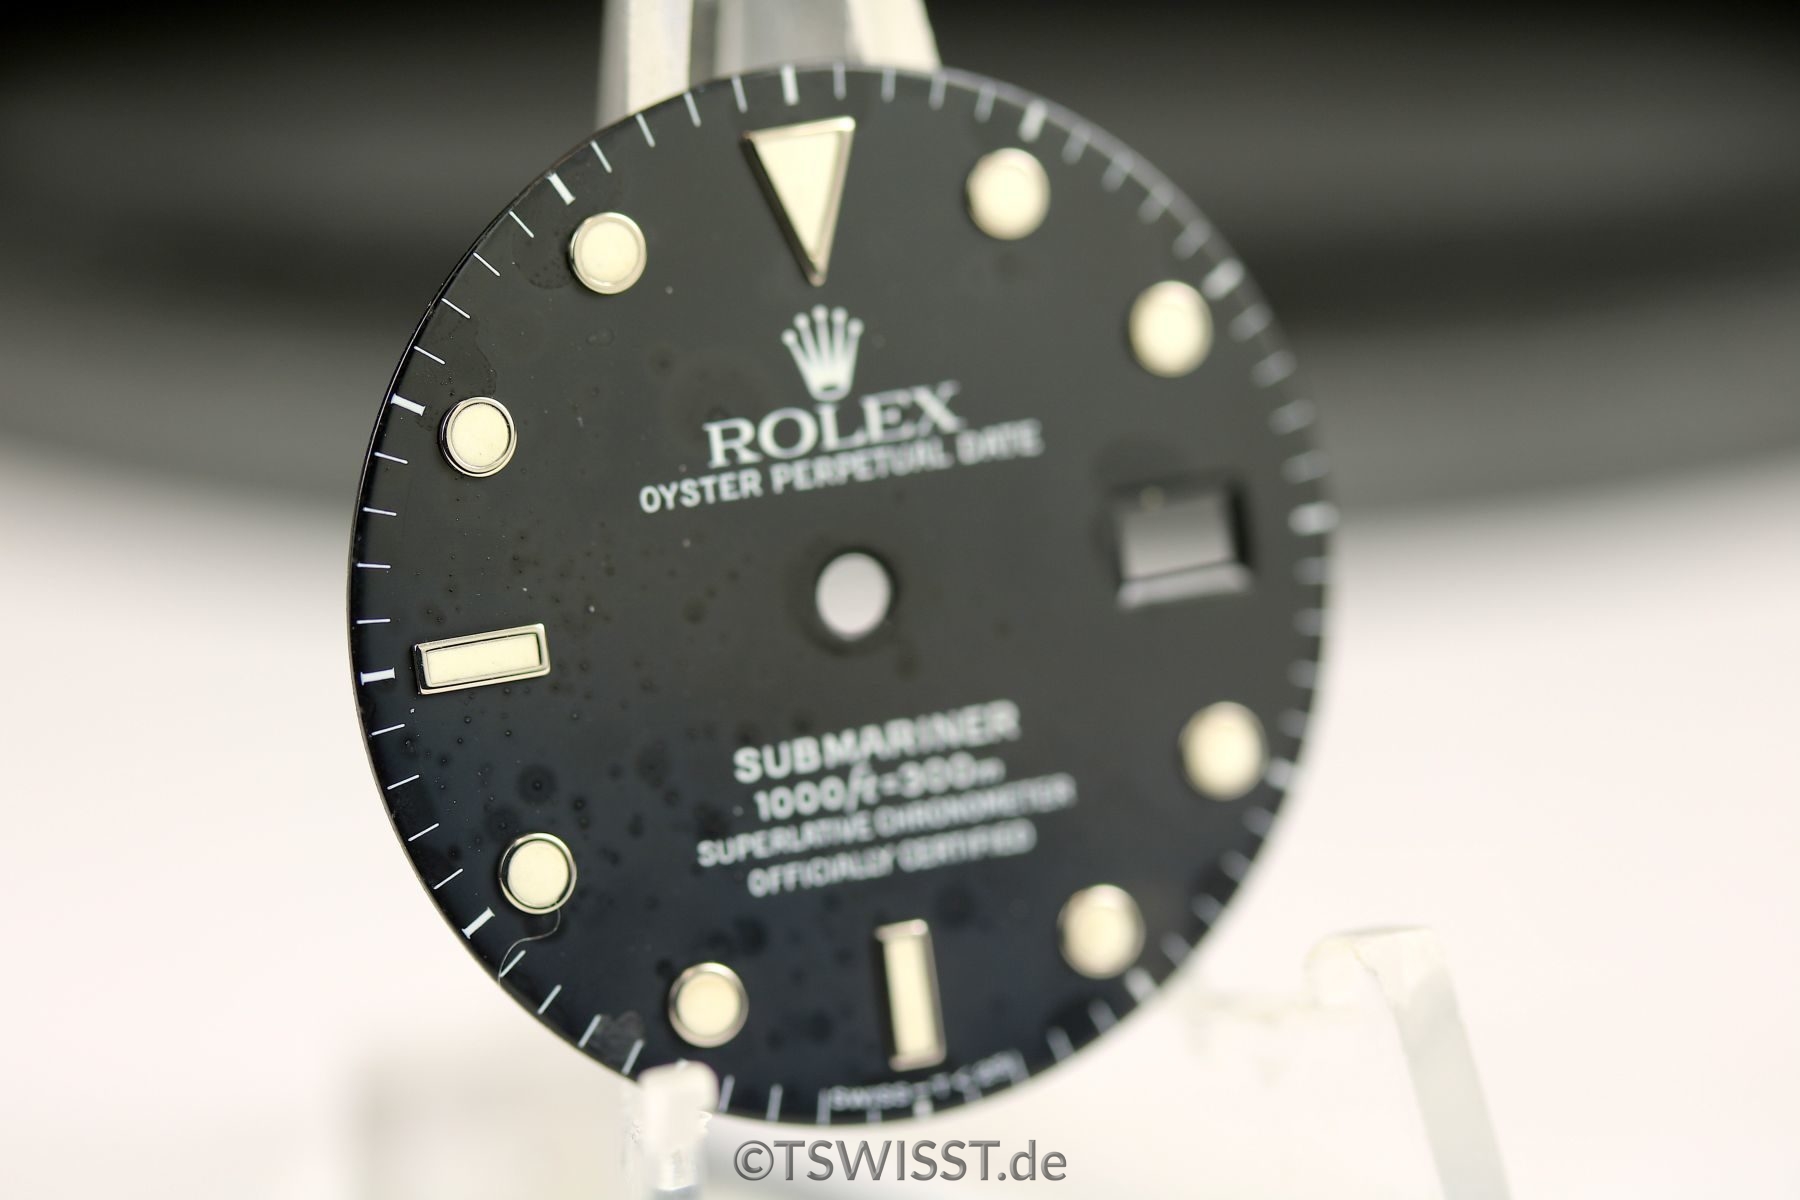 Rolex Submariner 16610 dial